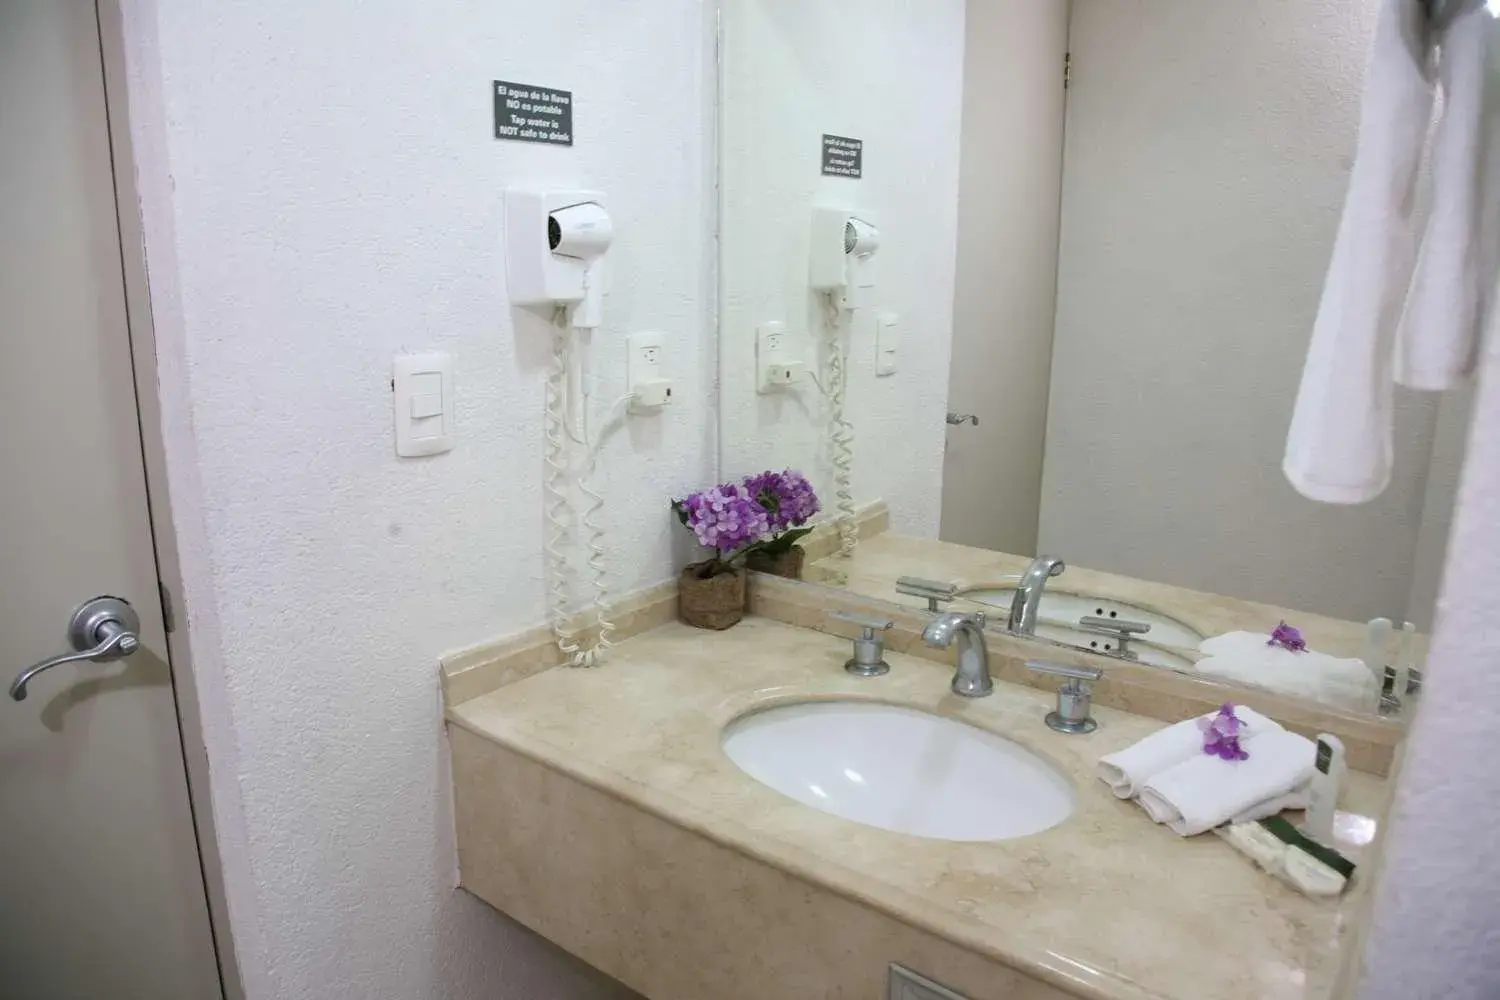 Bathroom in Hotel Poza Rica Centro